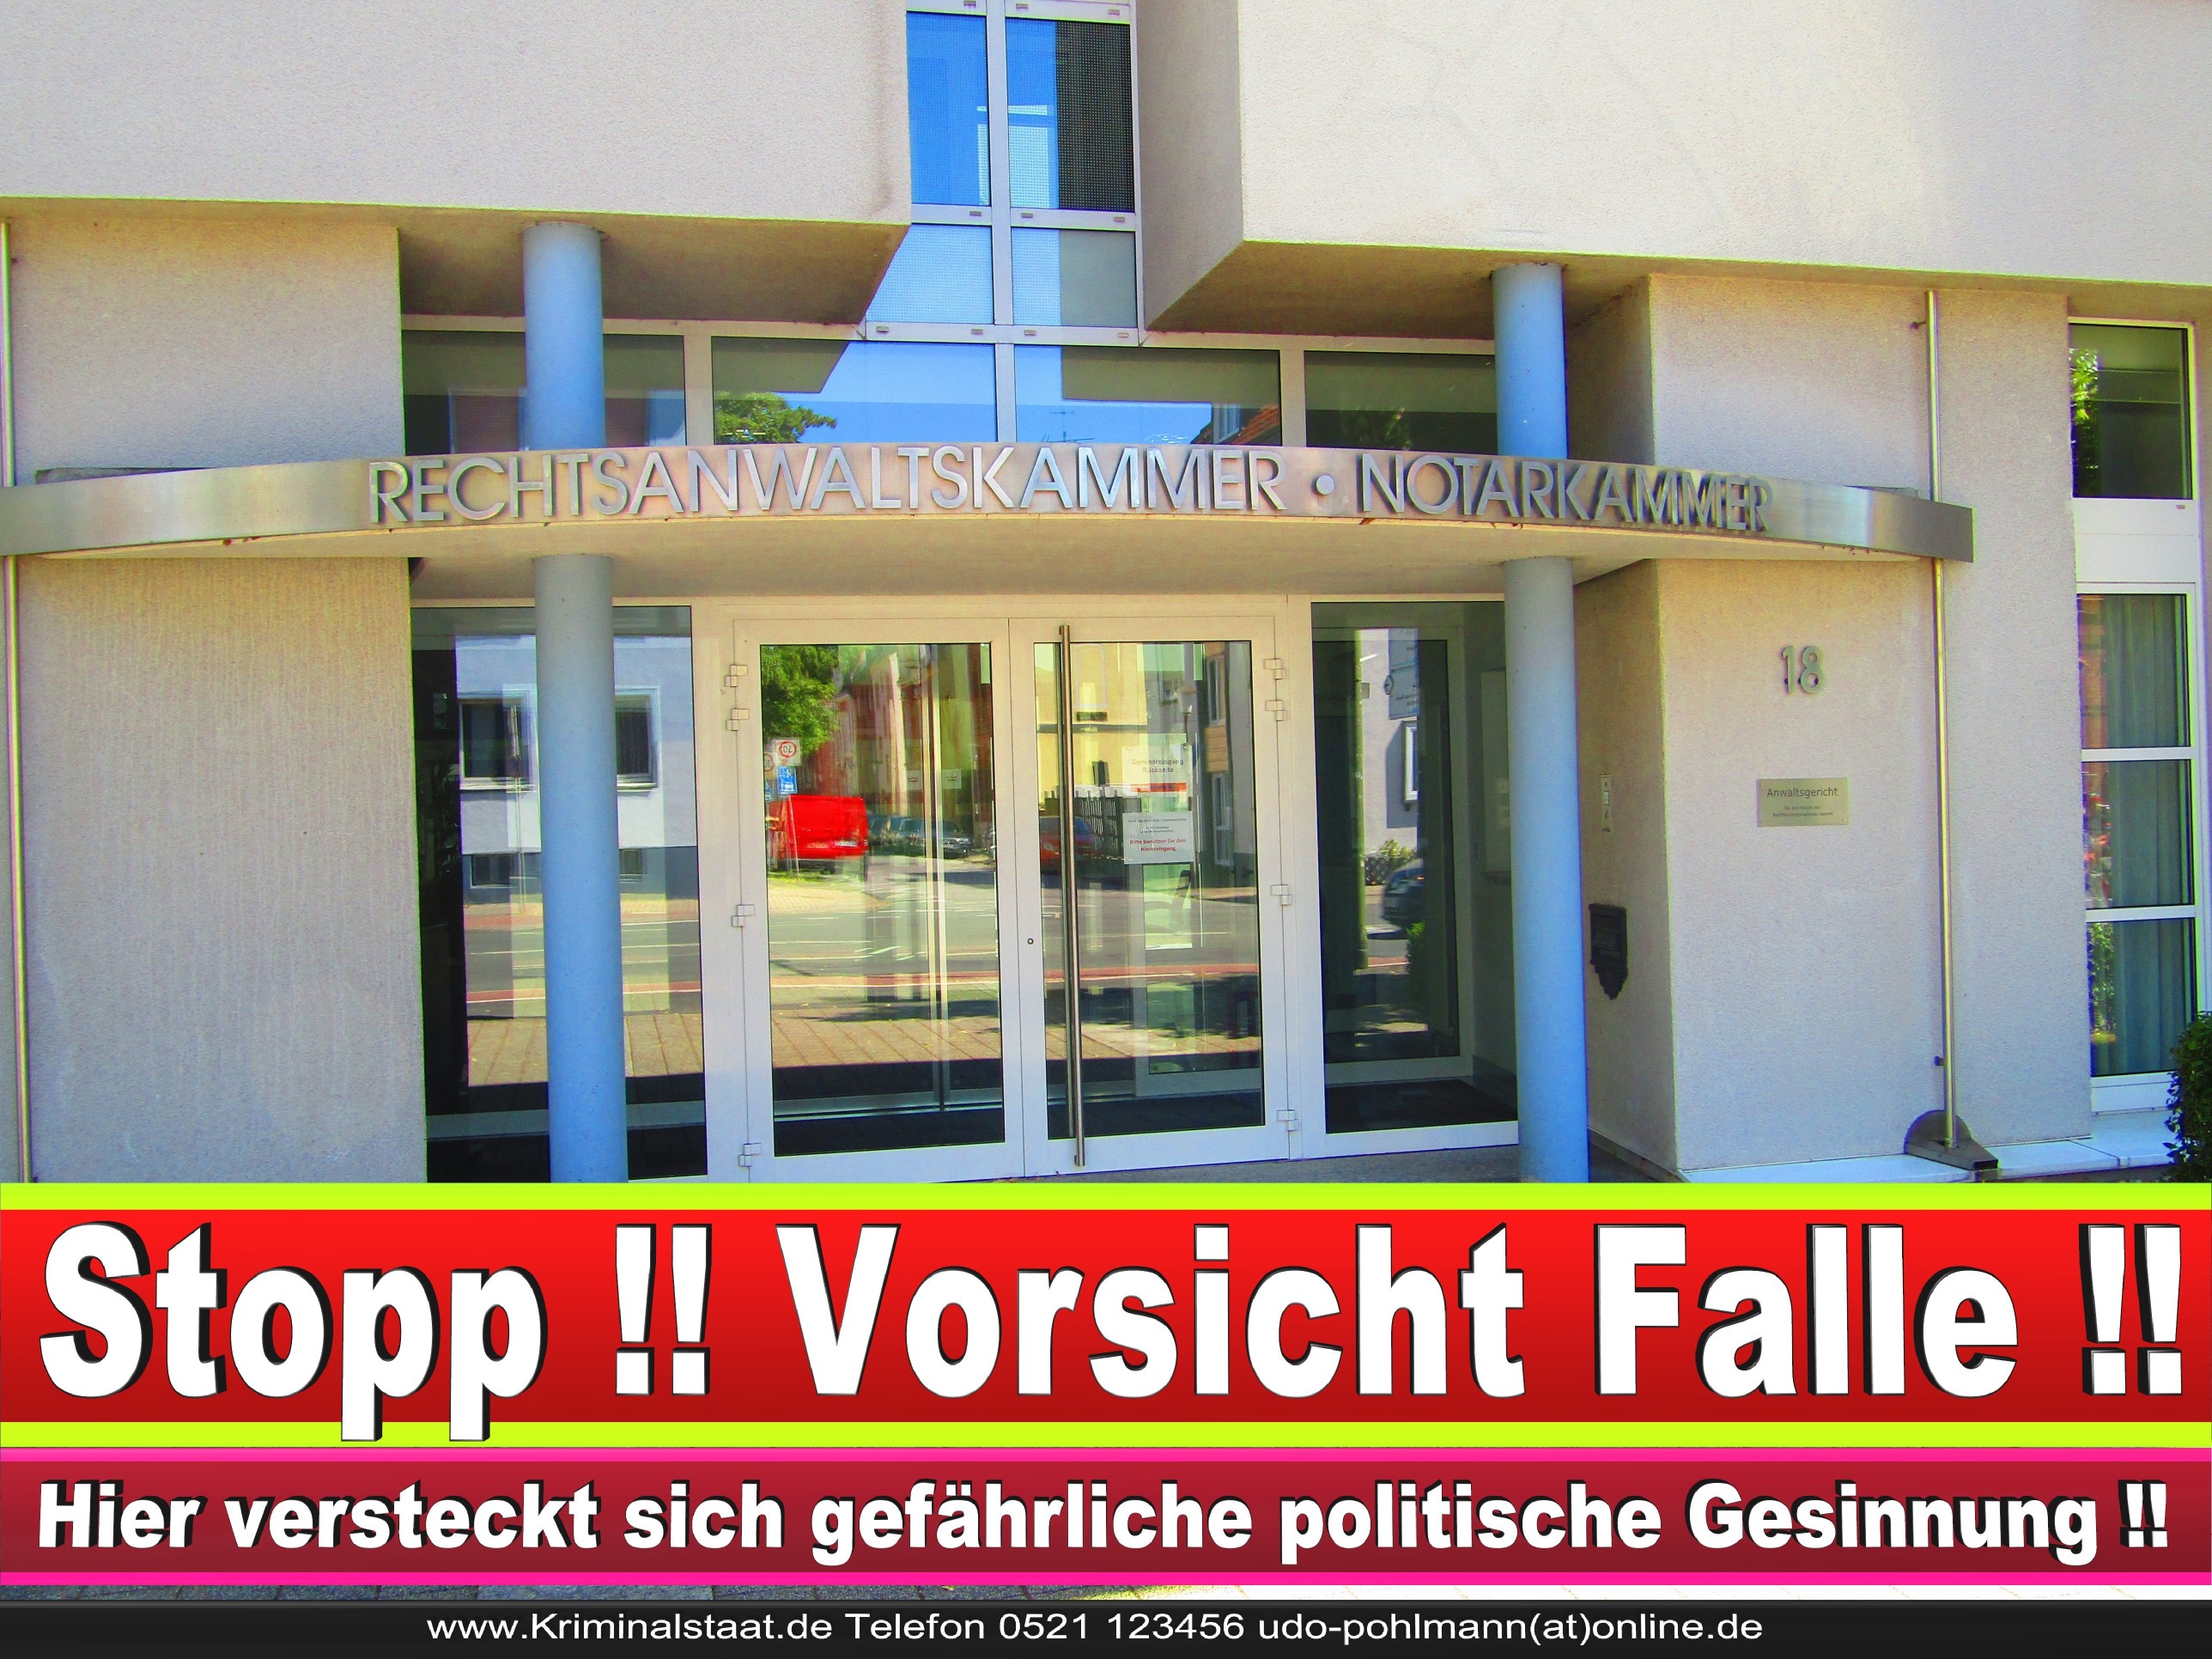 Rechtsanwaltskammer Hamm NRW Justizminister Rechtsanwalt Notar Vermögensverfall Urteil Rechtsprechung CDU SPD FDP Berufsordnung Rechtsanwälte Rechtsprechung (10)